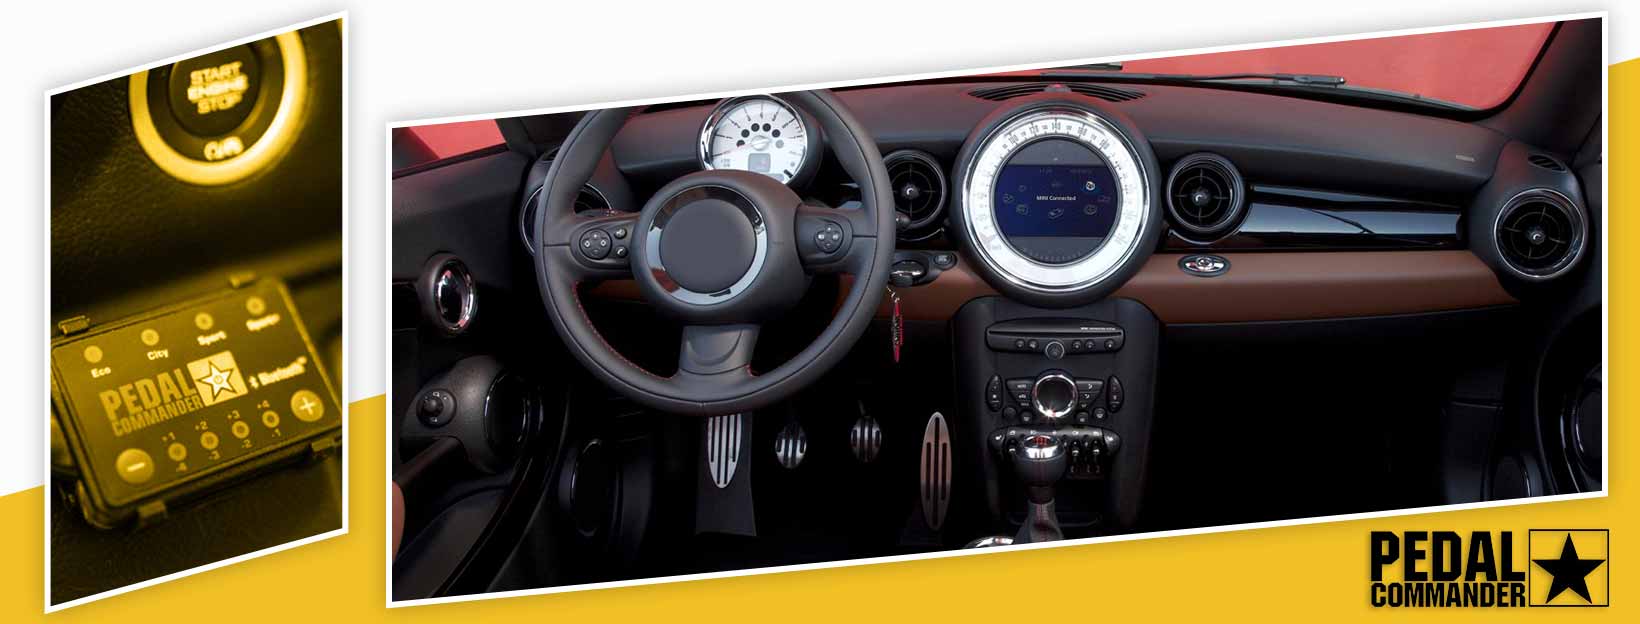 Pedal Commander for Mini Roadster - interior